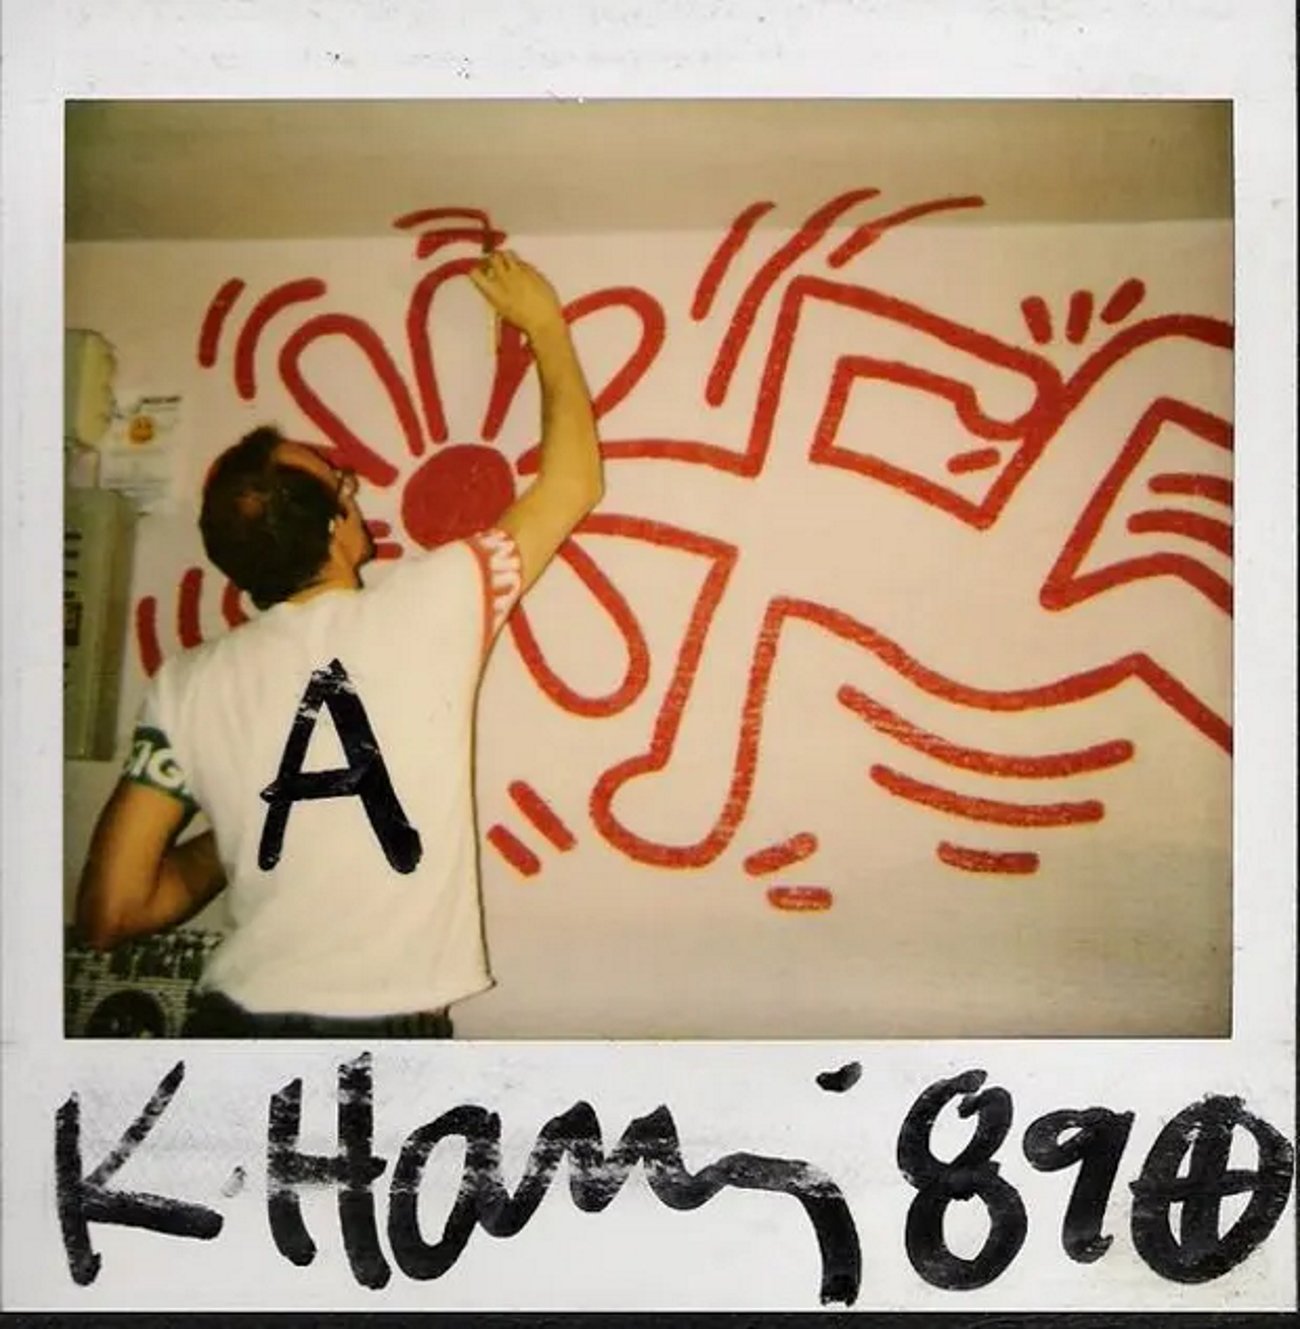 La noche que el artista Keith Haring bailó acid house en la mejor discoteca de Barcelona